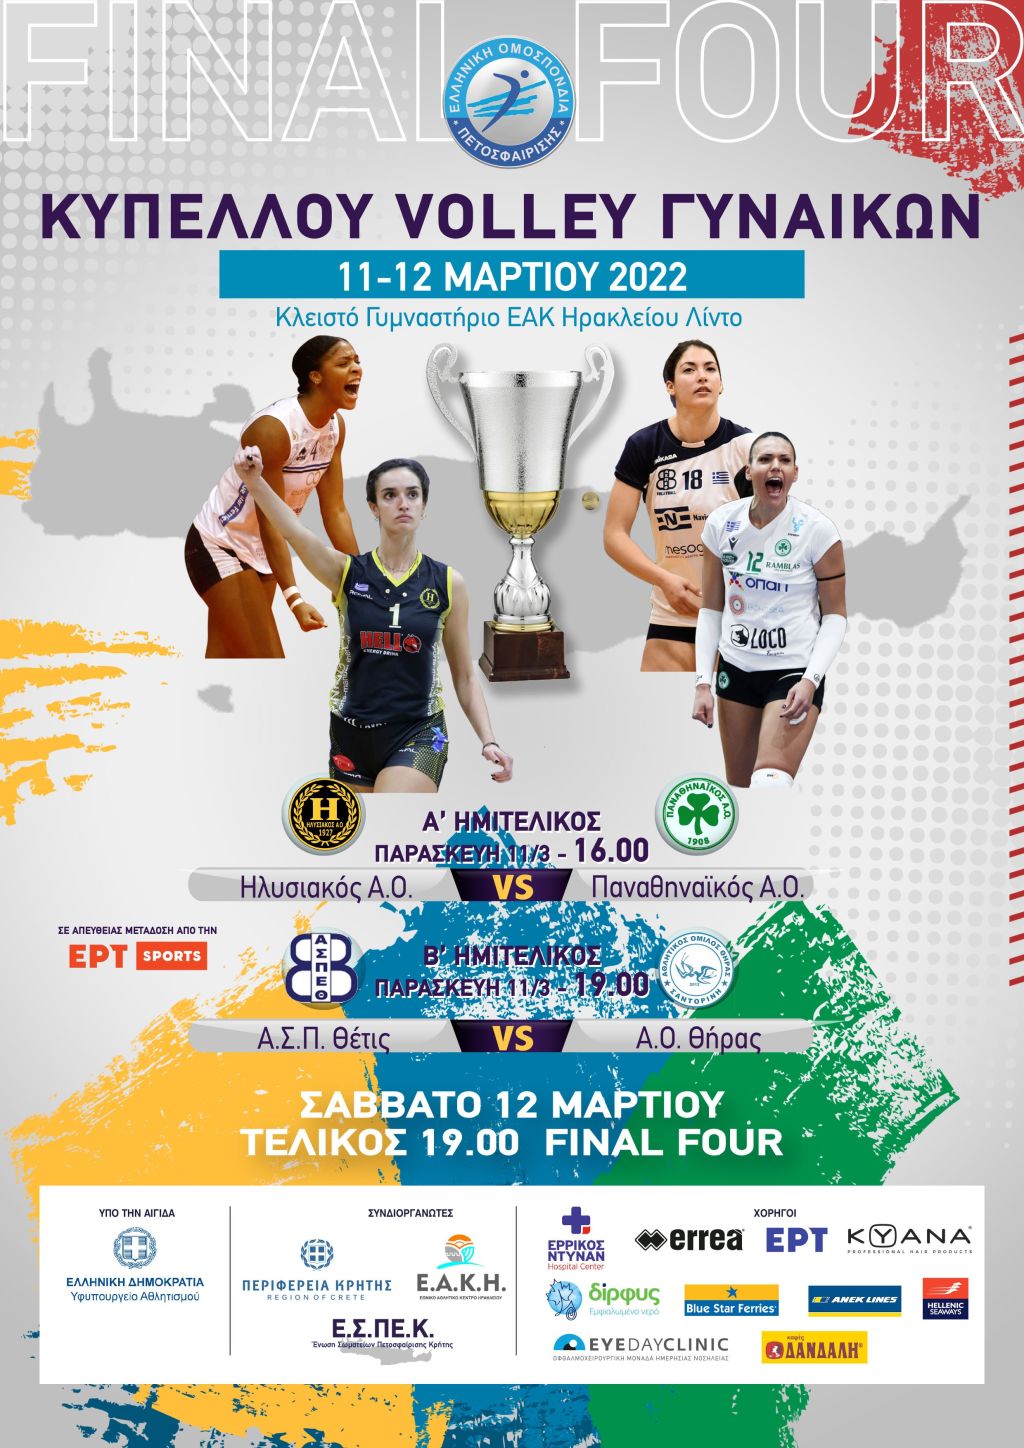 Κύπελλο γυναικών: Από την ERTSPORTS HD οι αγώνες του final-4 στο Ηράκλειο Κρήτης (πρόγραμμα)